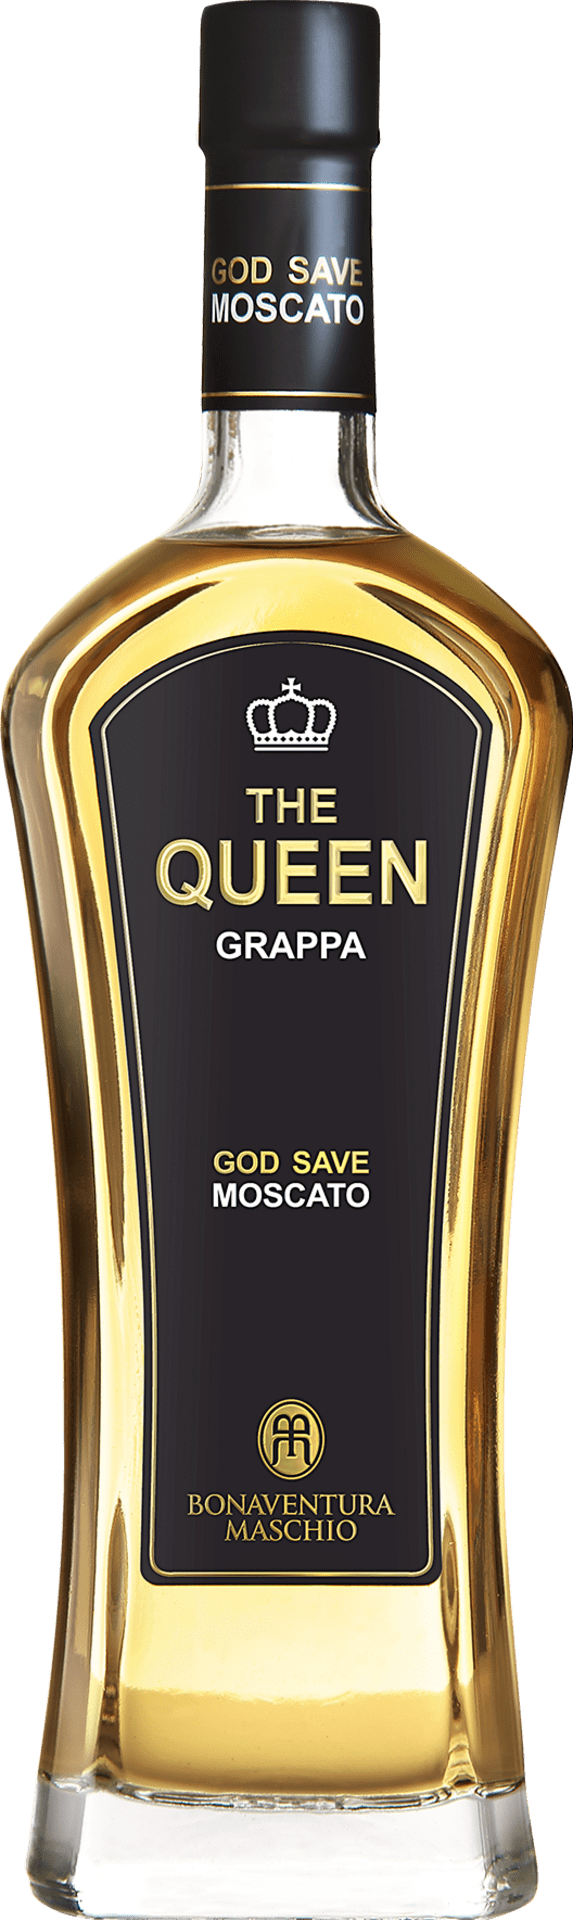 The Queen - Grappa di Moscato